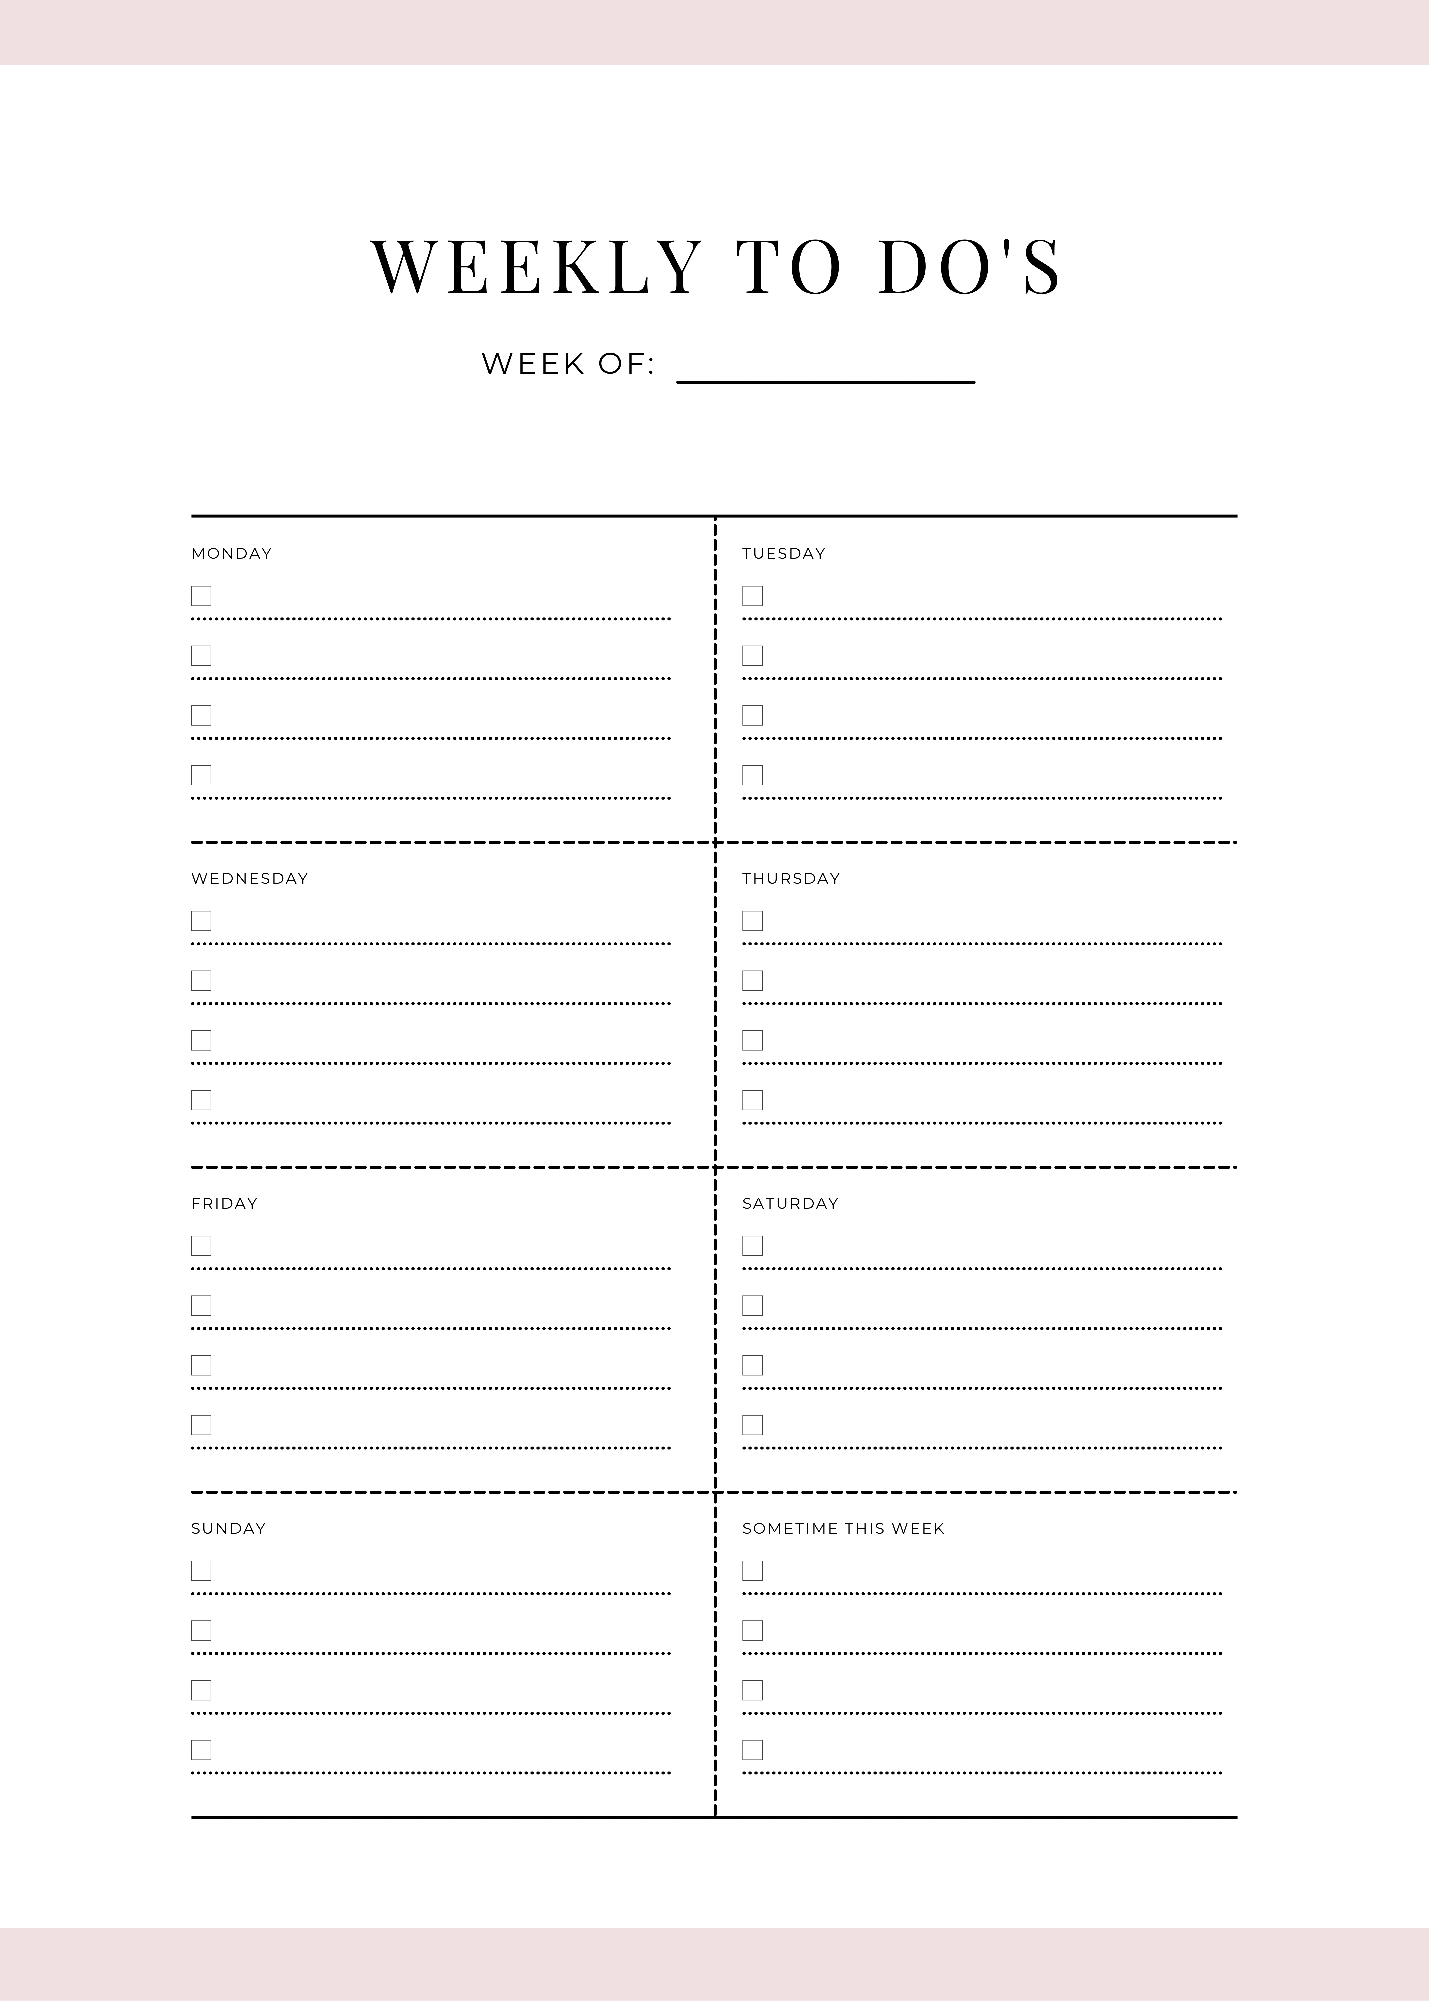 Weekly ToDo Checklist Printable 